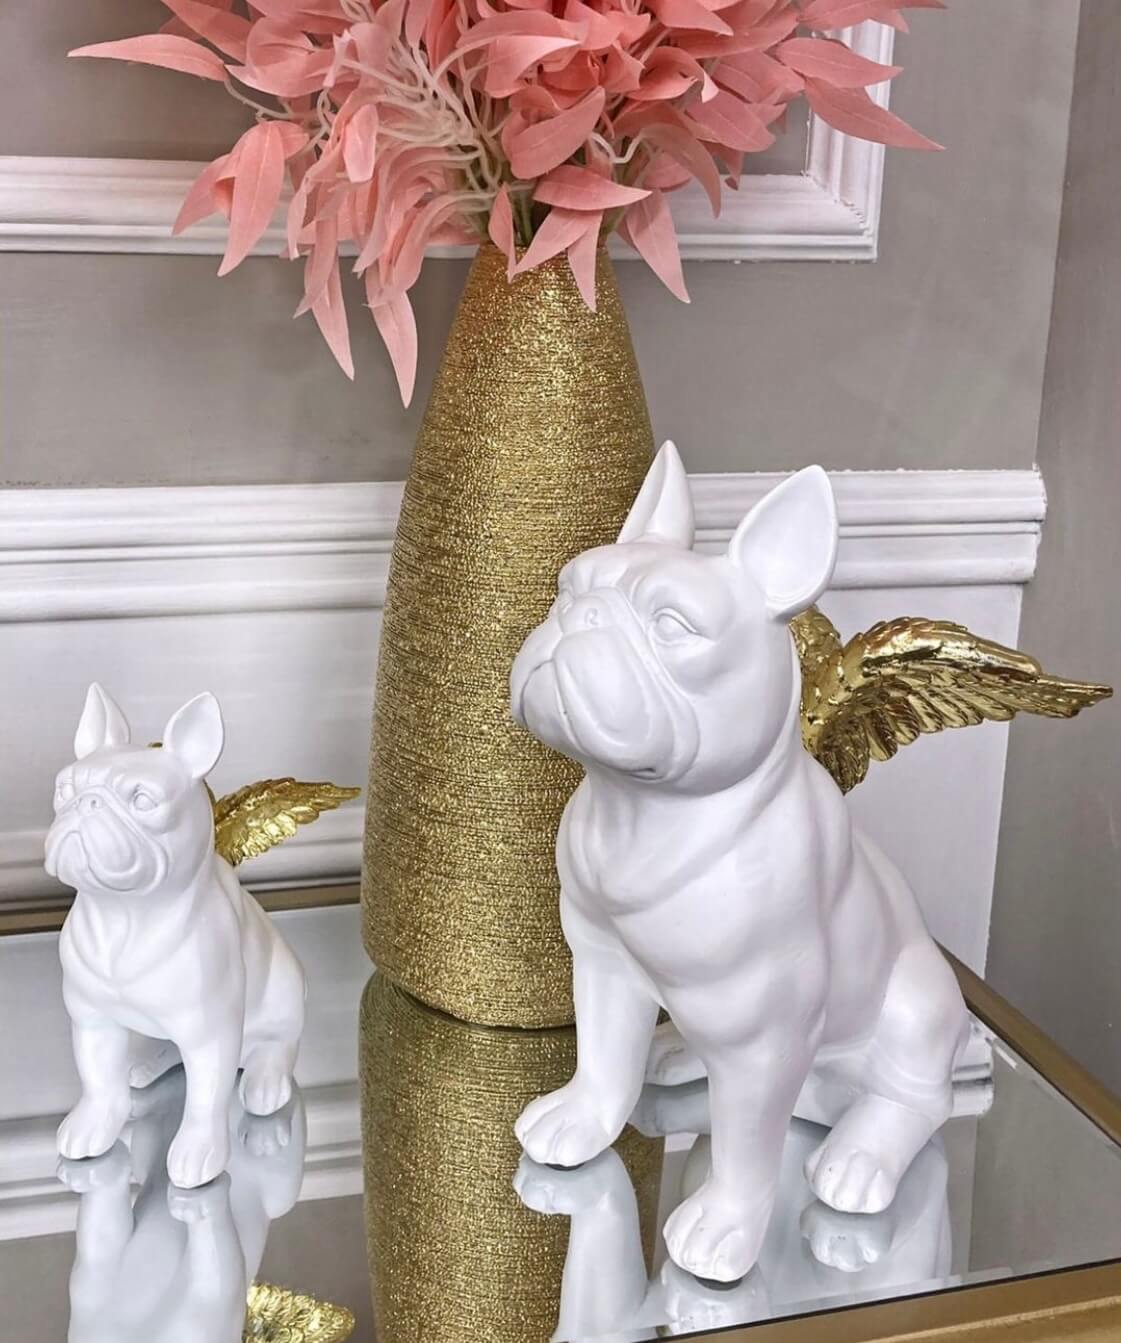 sculptuur van bulldog met gouden vleugels